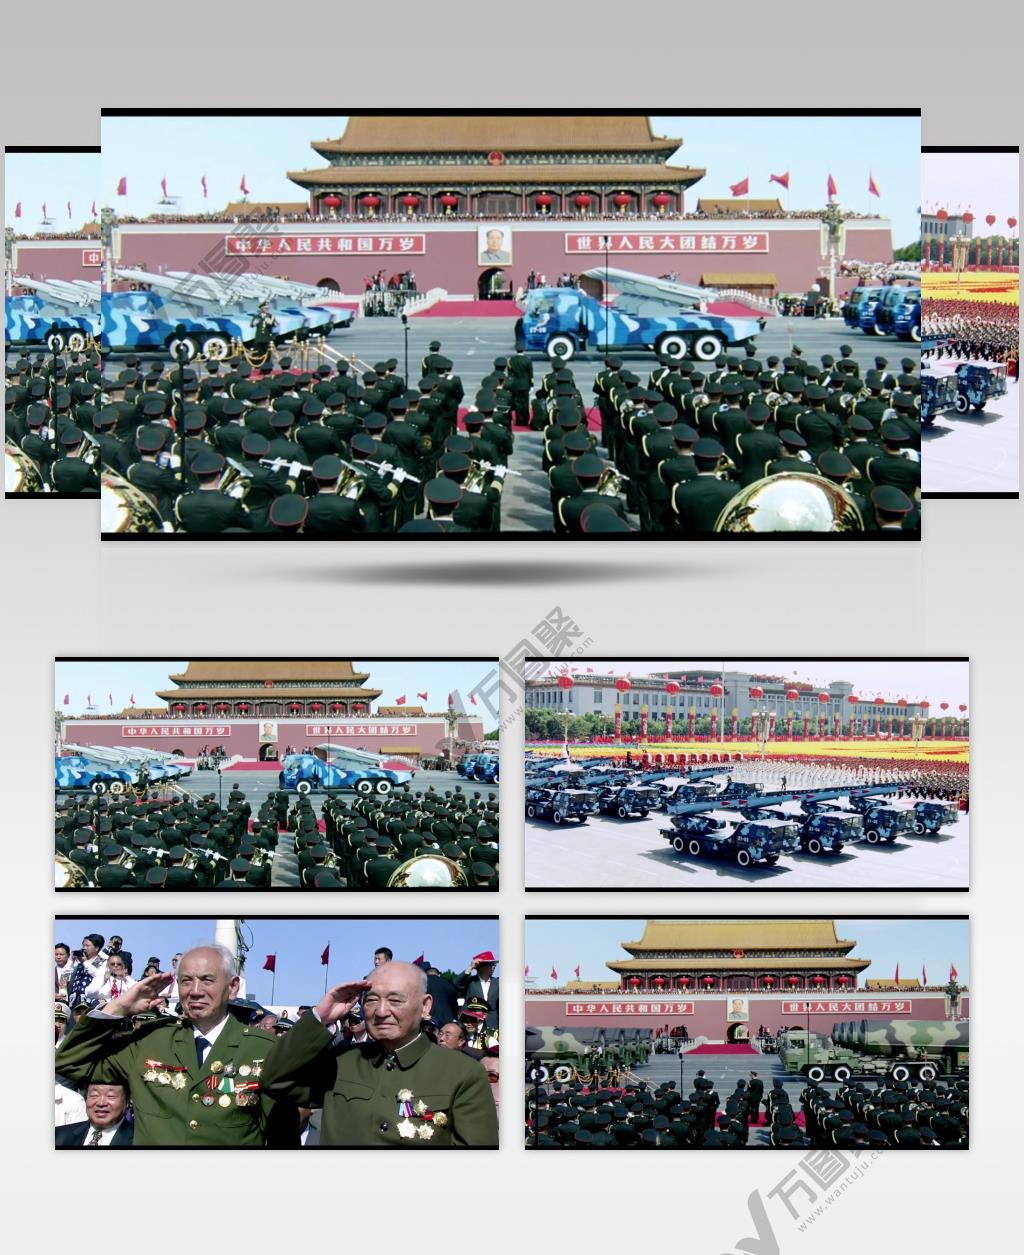 1999年国庆--60周年国庆阅兵-中国60周年大阅兵4_batch中国高清实拍素材宣传片